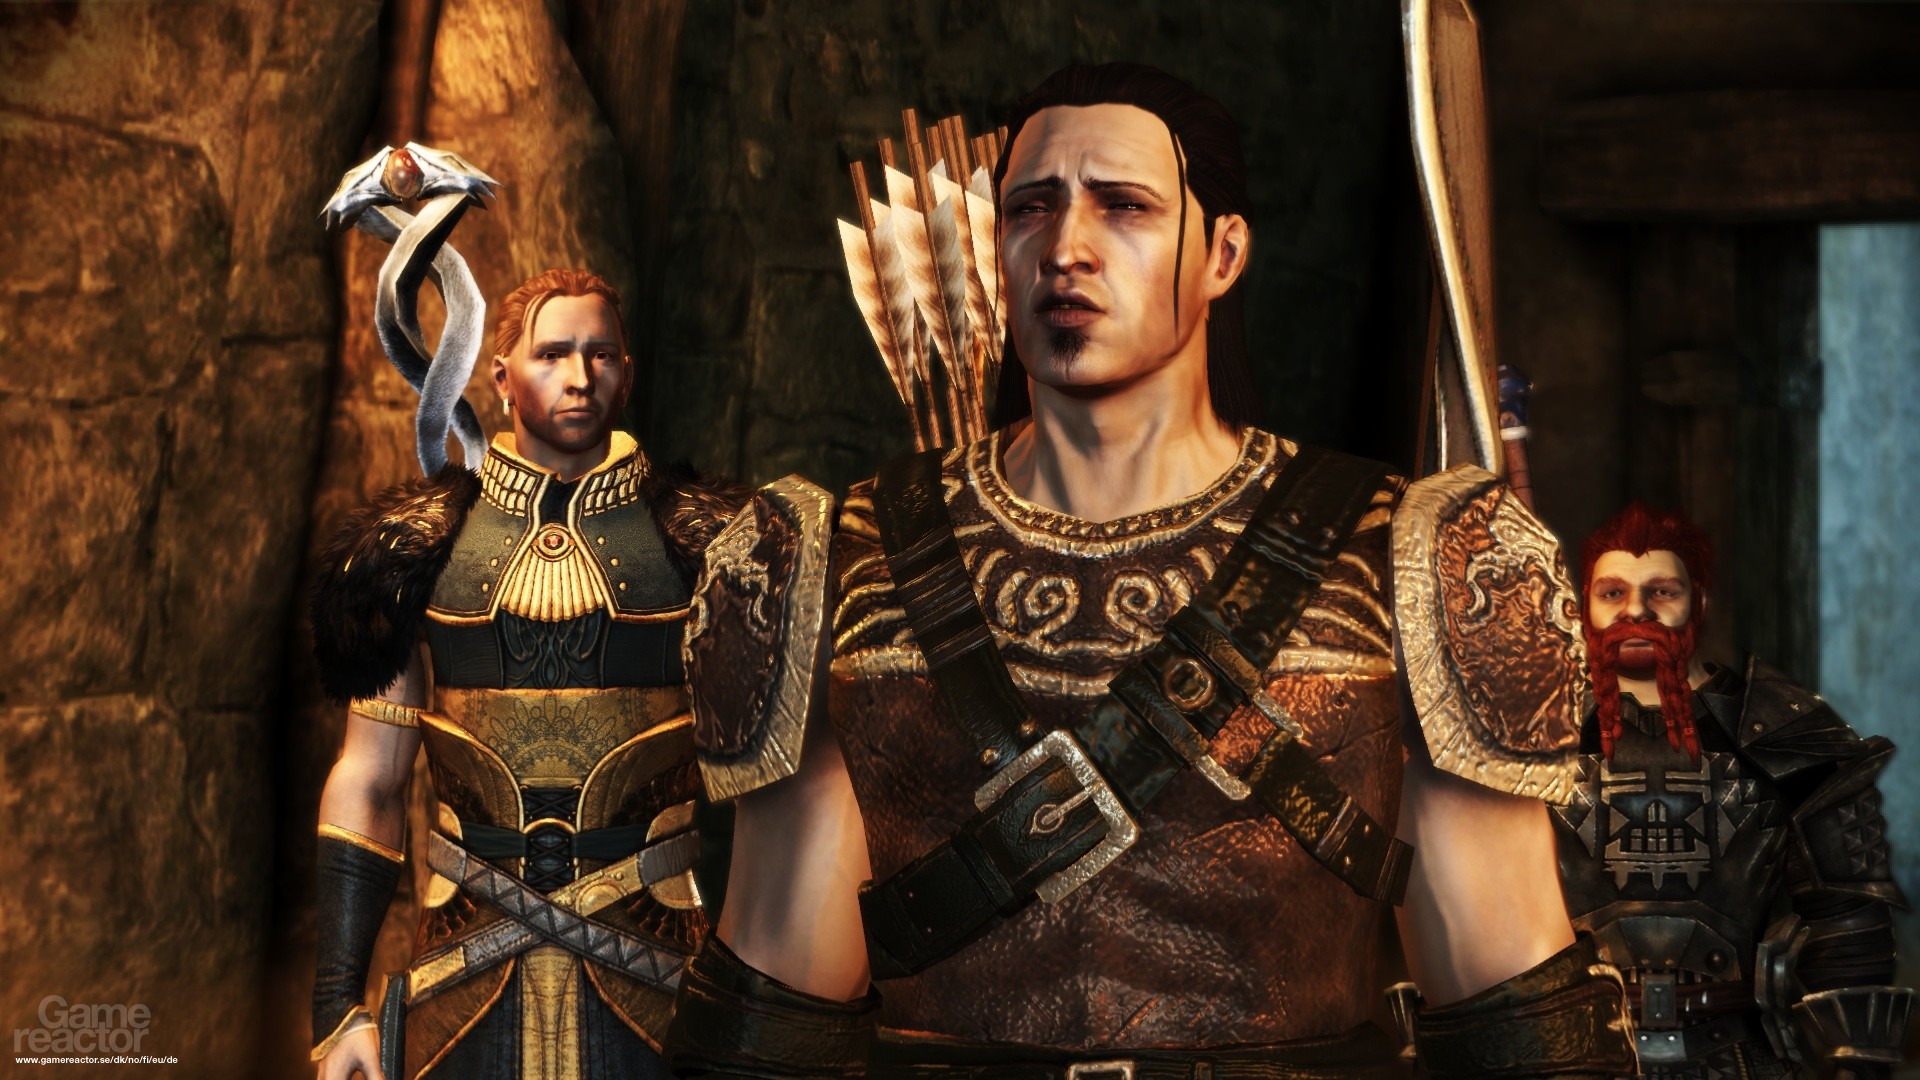 Dragon Age Origins Awakening Origins 2 Xbox 360 Game Lot Set